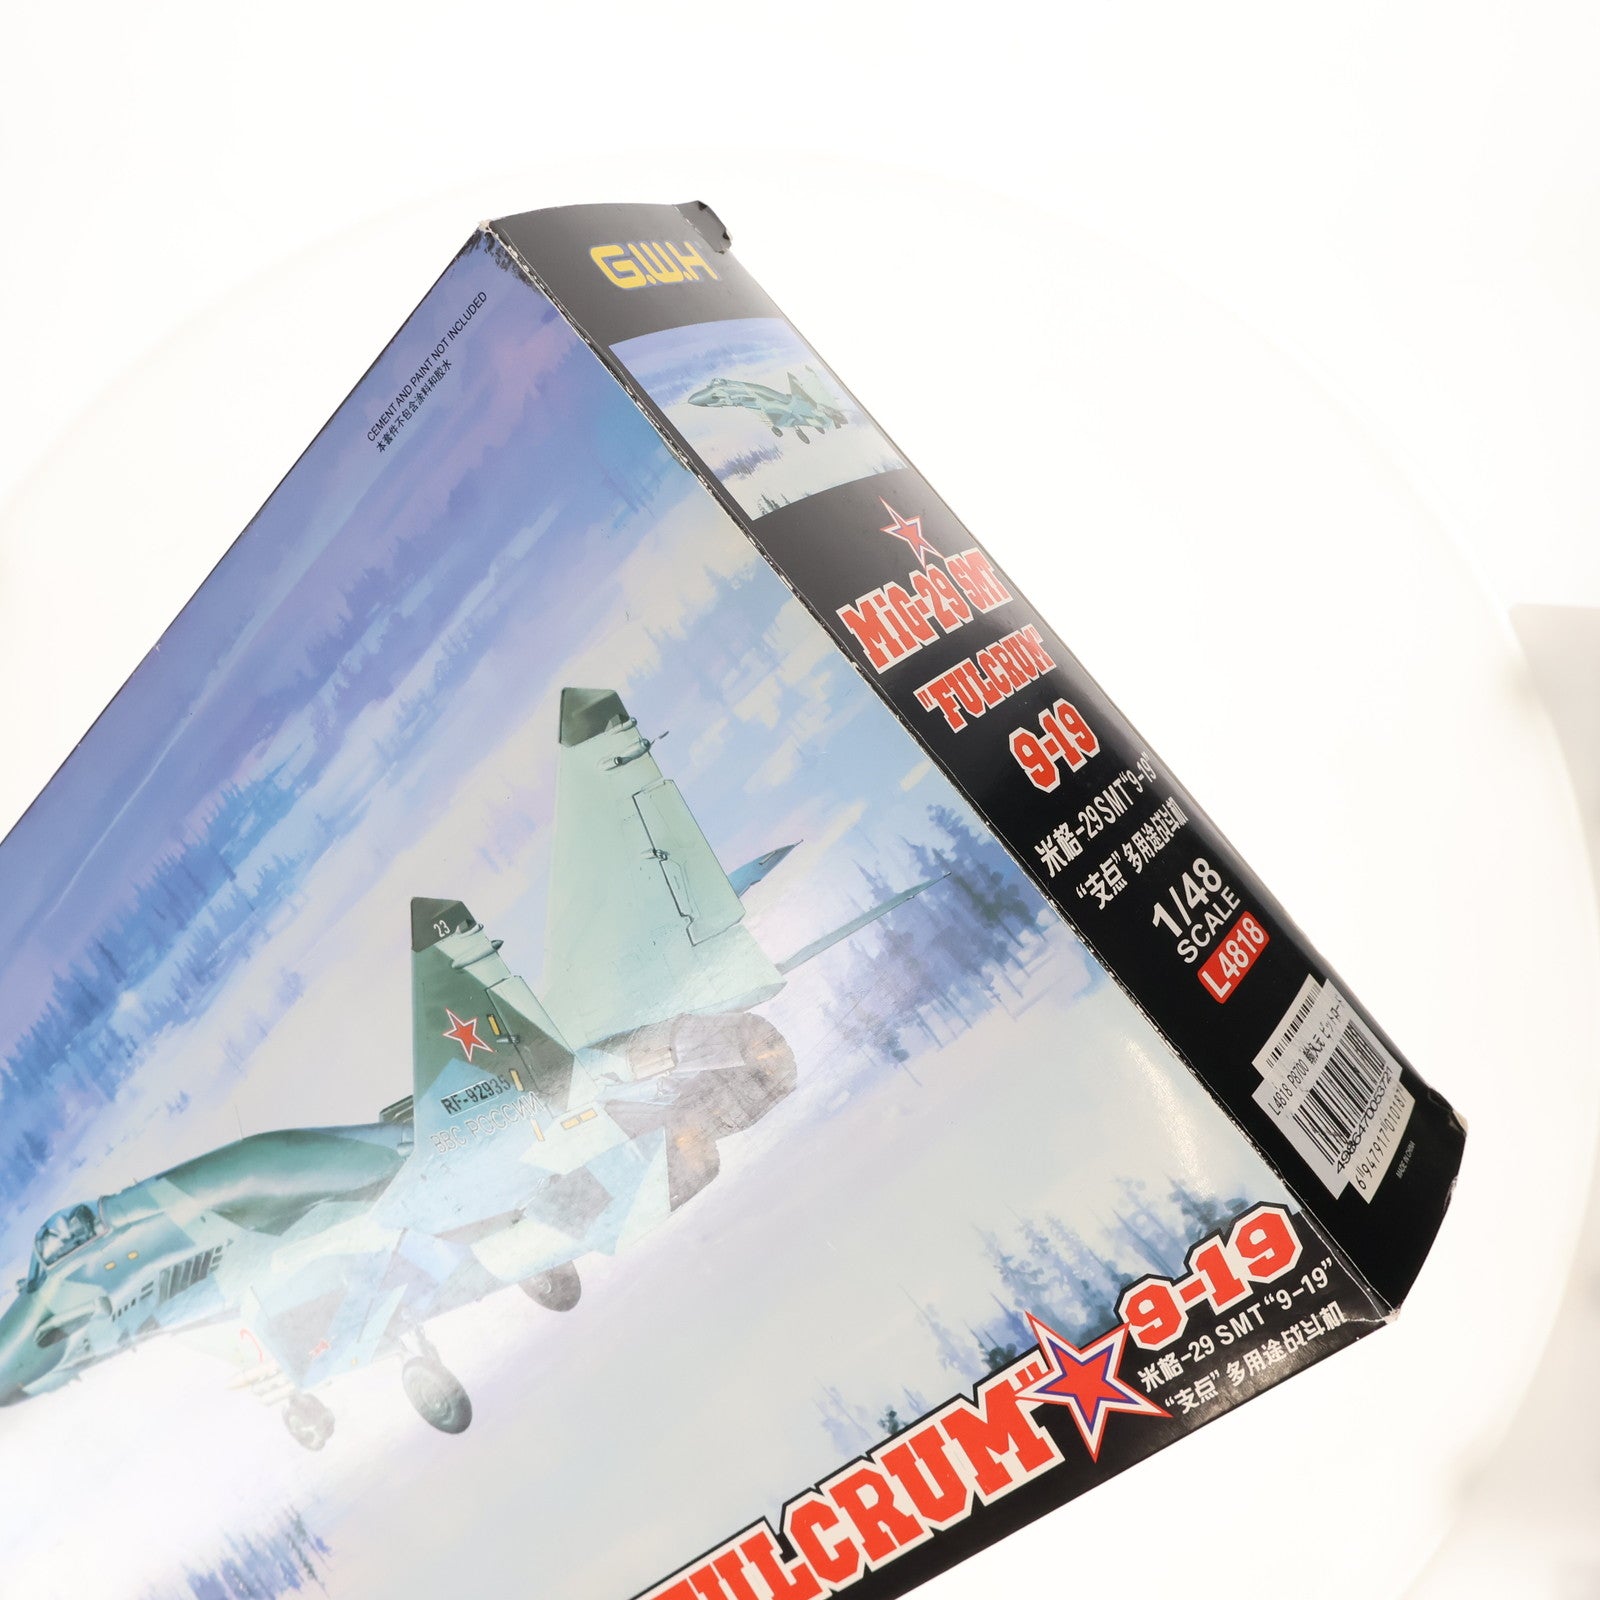 【中古即納】[PTM]1/48 MiG-29 SMT FULCRUM 9-19 プラモデル(L4818) グレートウォールホビー(20150829)